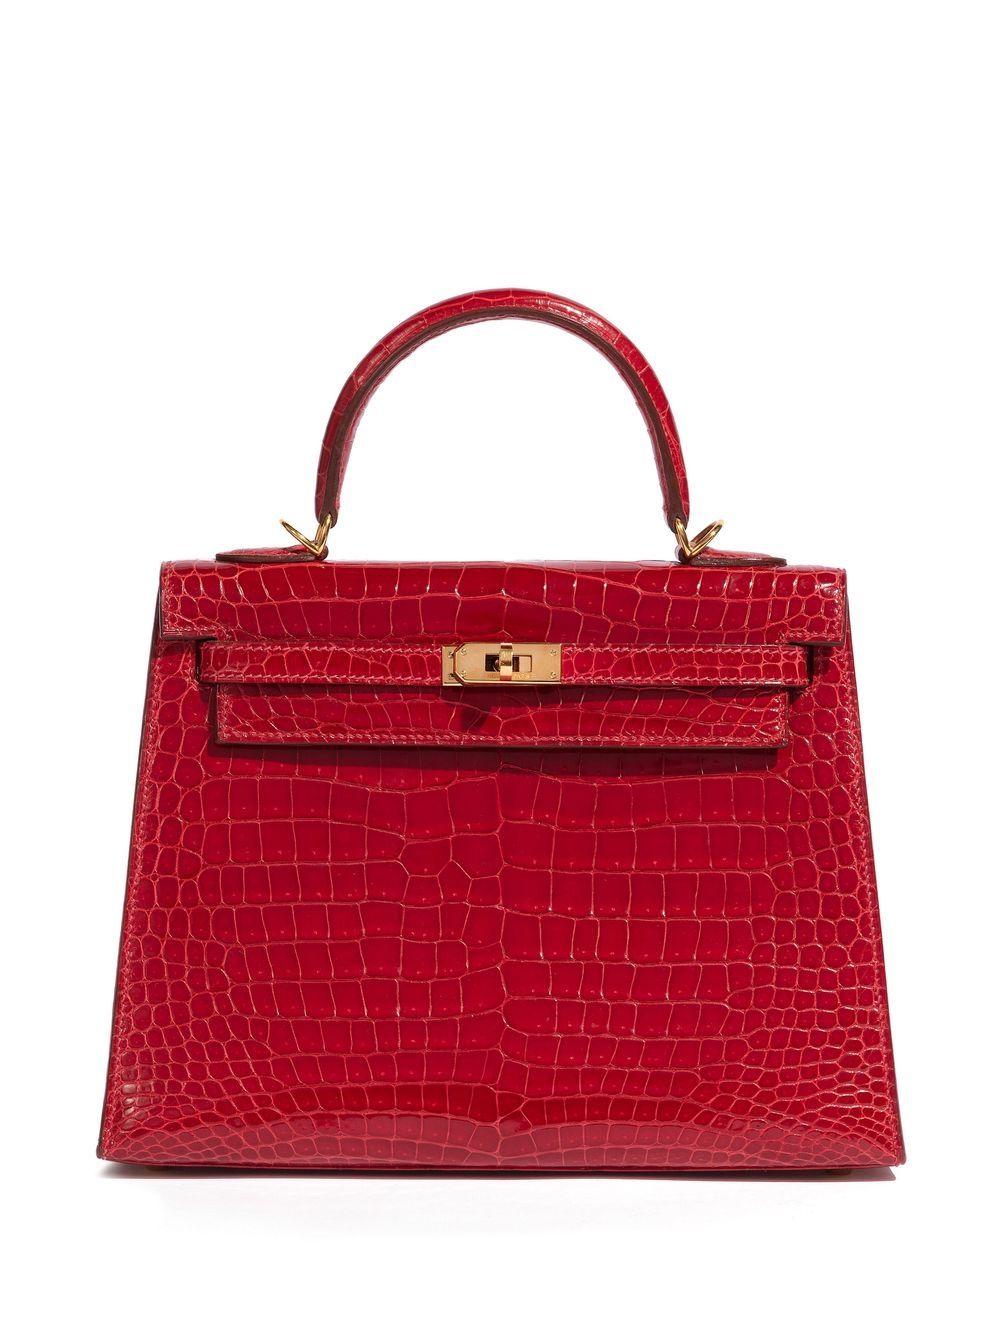 En excellent état, ce Kelly rouge Hermès de 25 cm est présenté dans un magnifique cuir rouge brillant Niloticus et une quincaillerie dorée. Ce sac à main est un véritable joyau, livré avec son sac à poussière d'origine. 